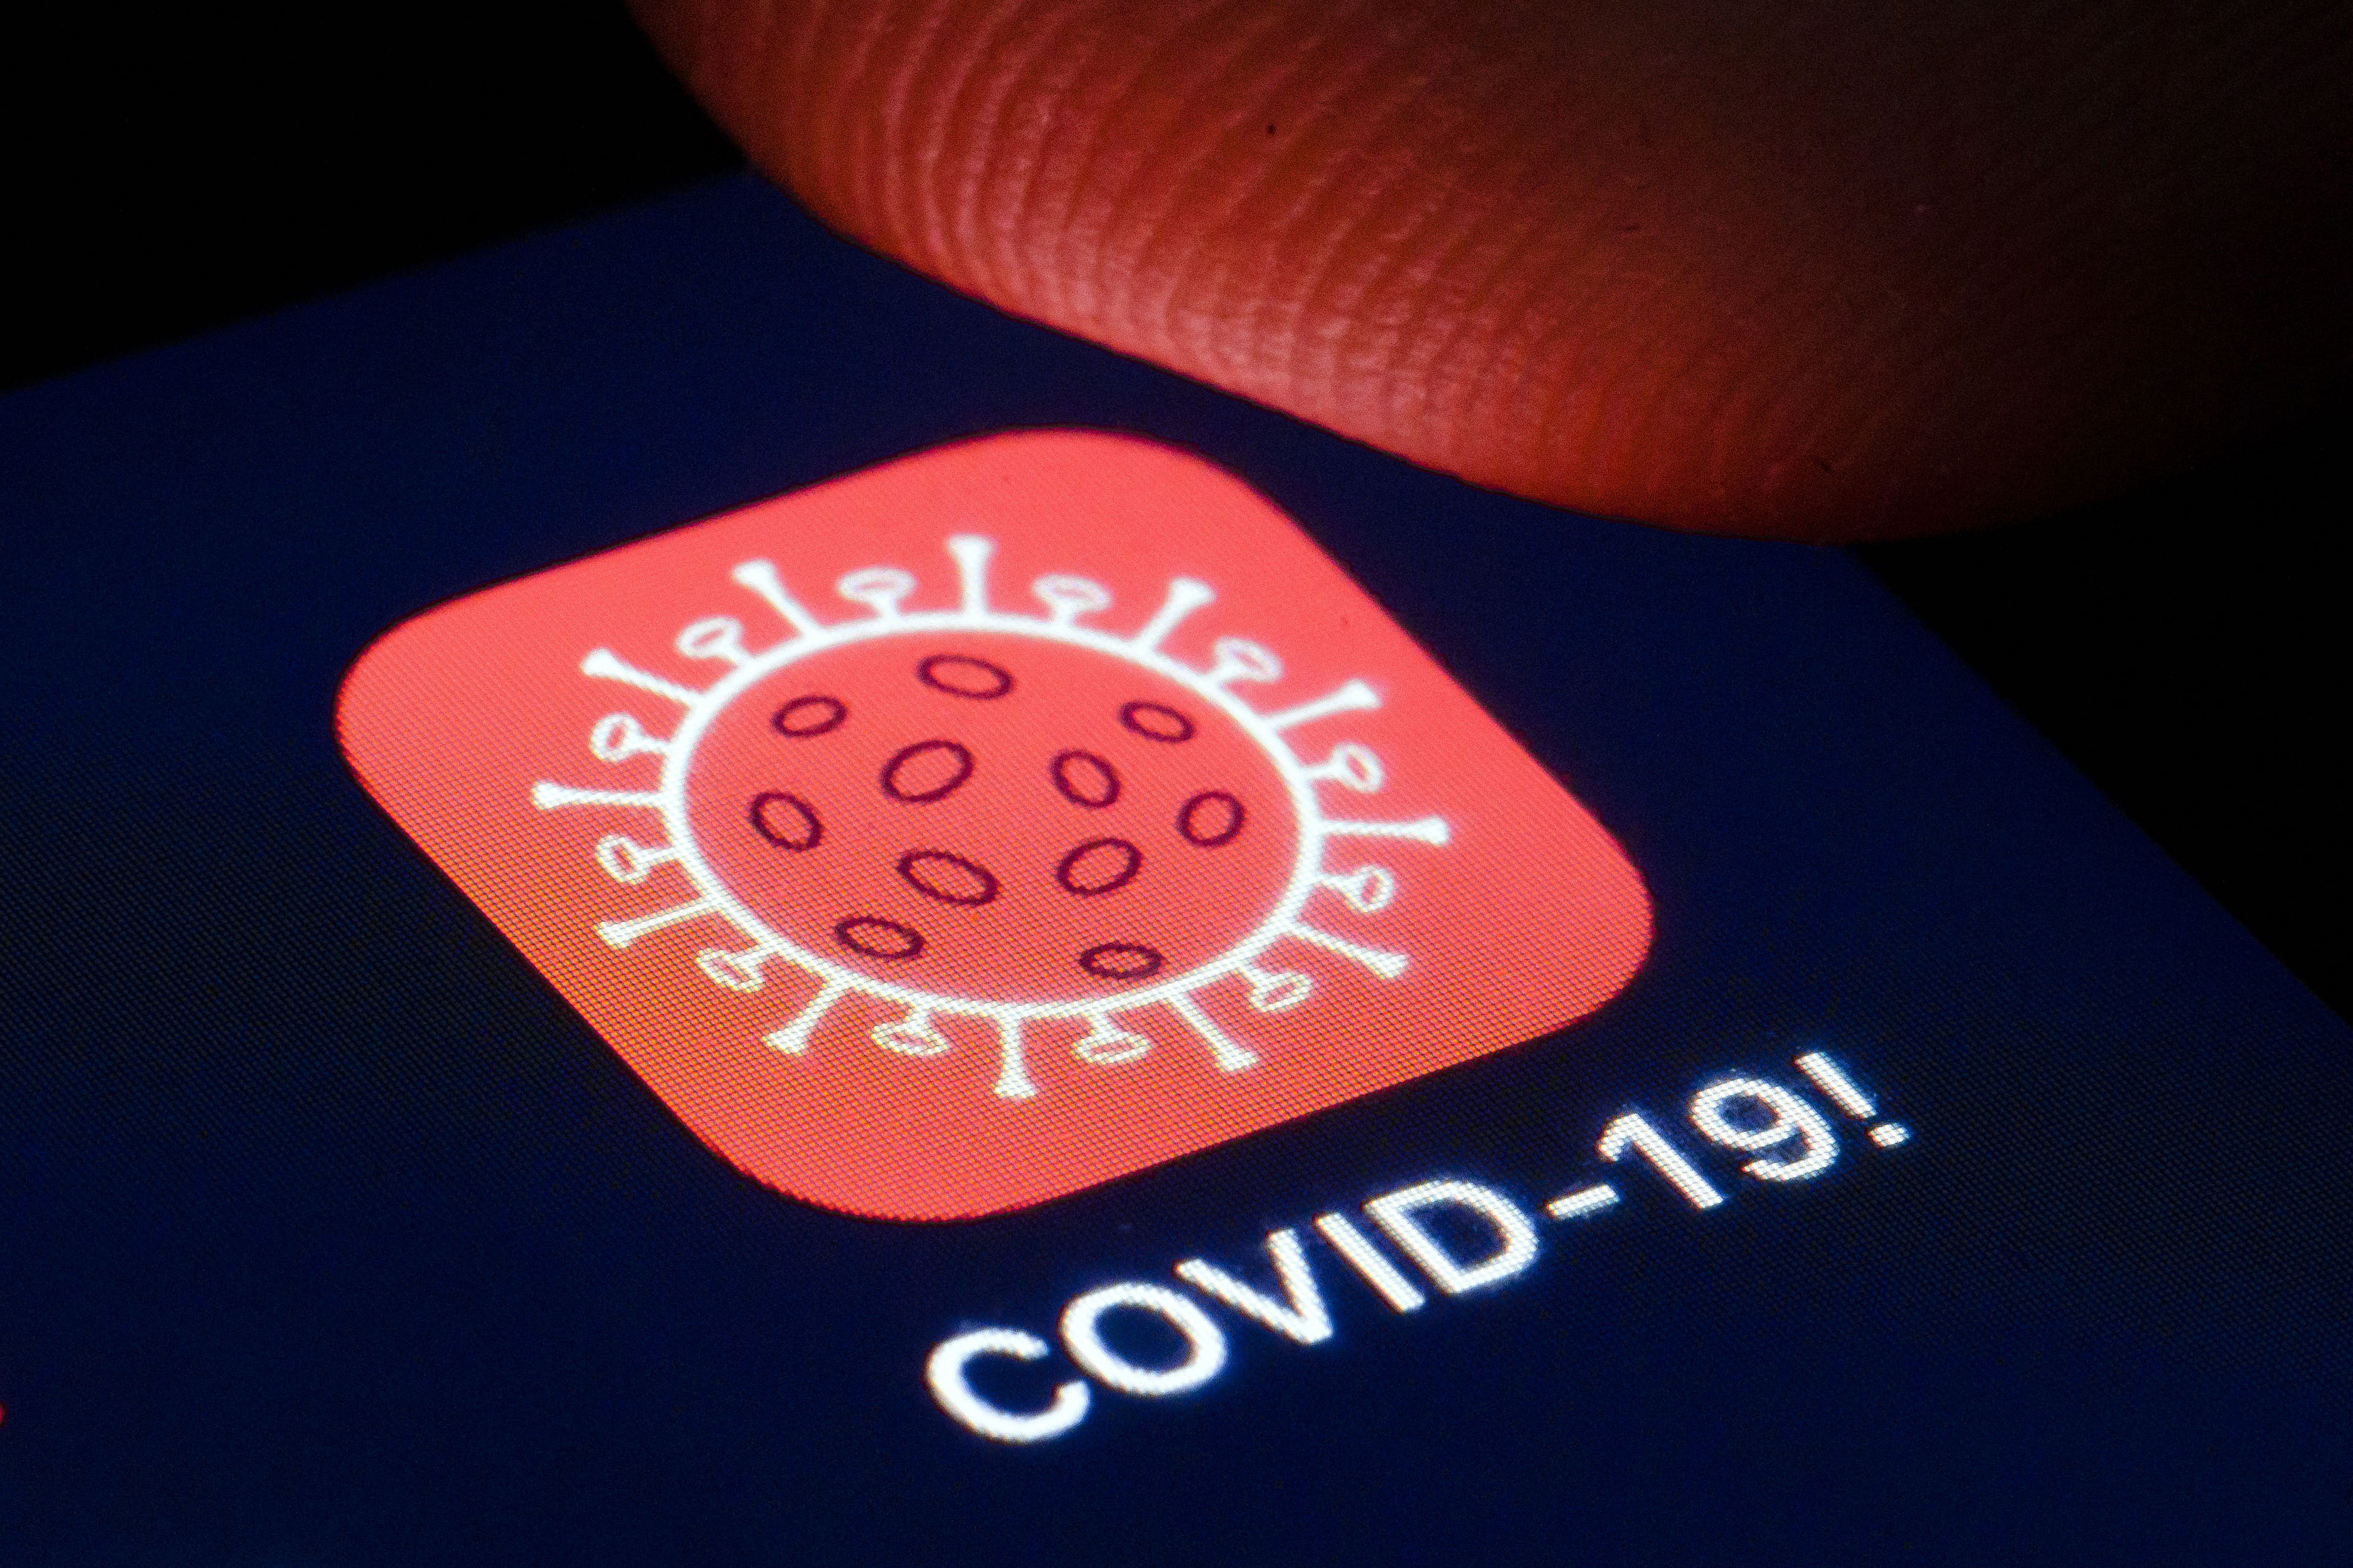 Covid-19-App auf einem Smartphone